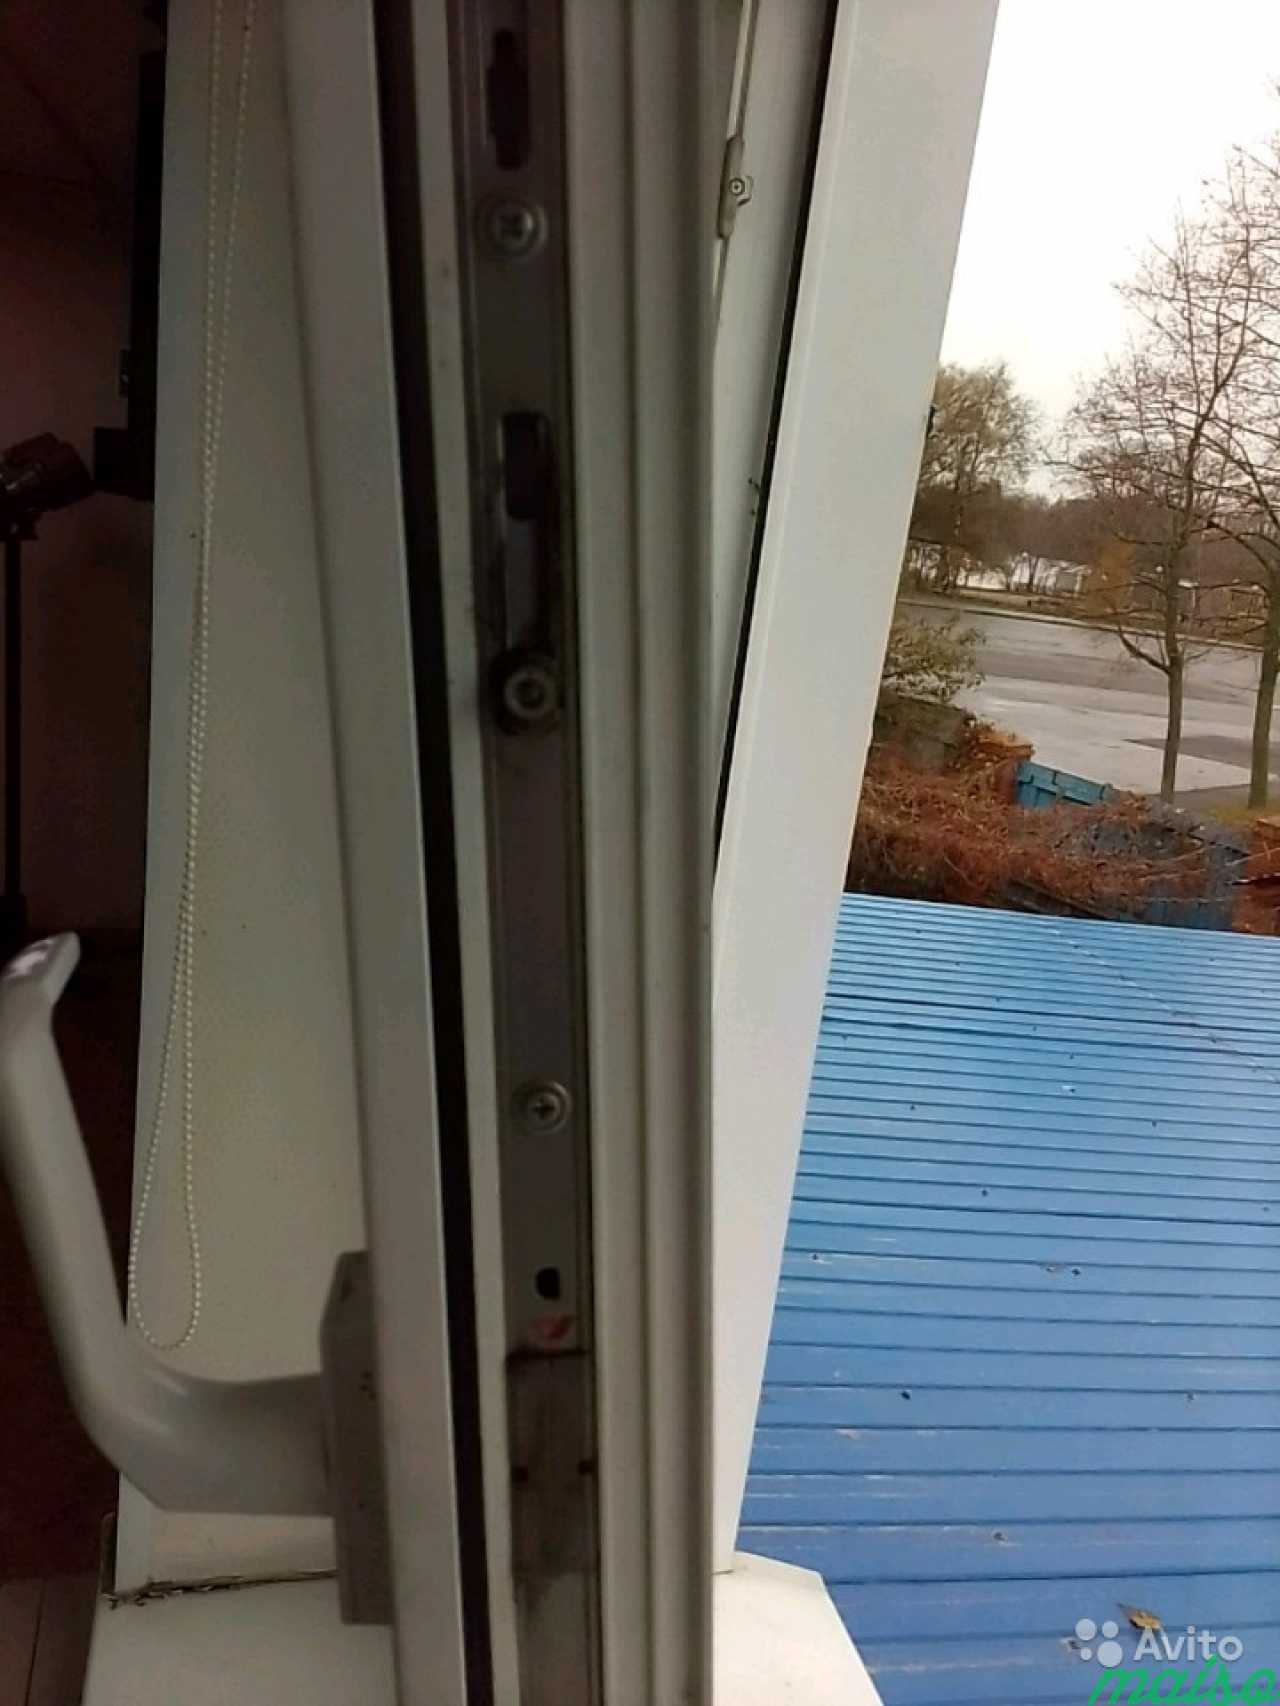 Окна двери регулировка ремонт мастер в Санкт-Петербурге. Фото 2